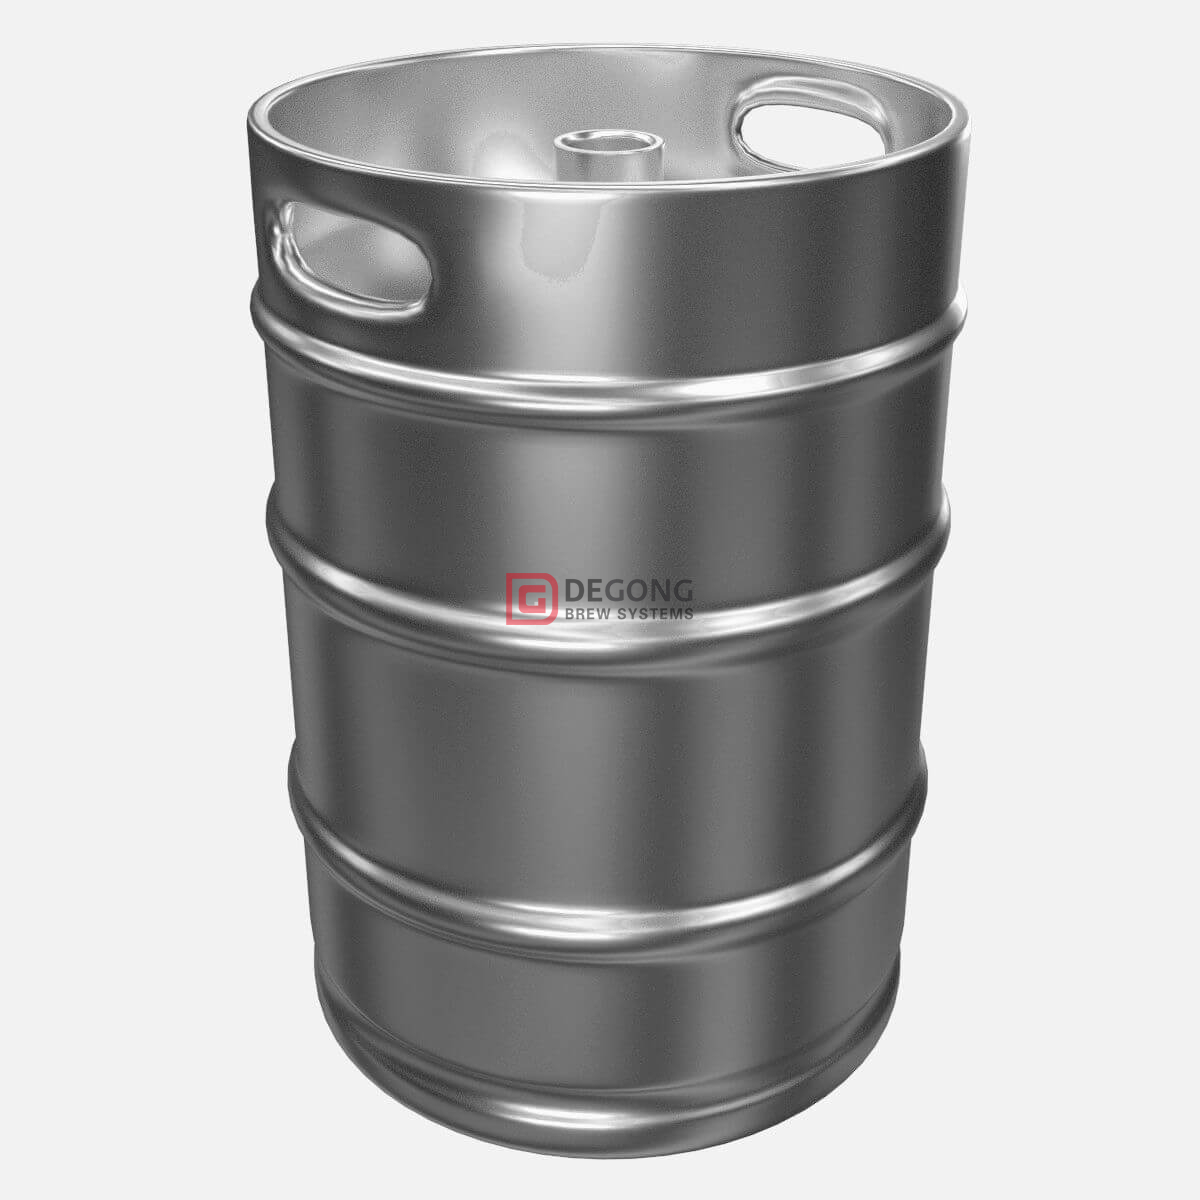 Europeisk standard rostfritt stål 20 30 50 liter ölfat / ölfat för bryggeri